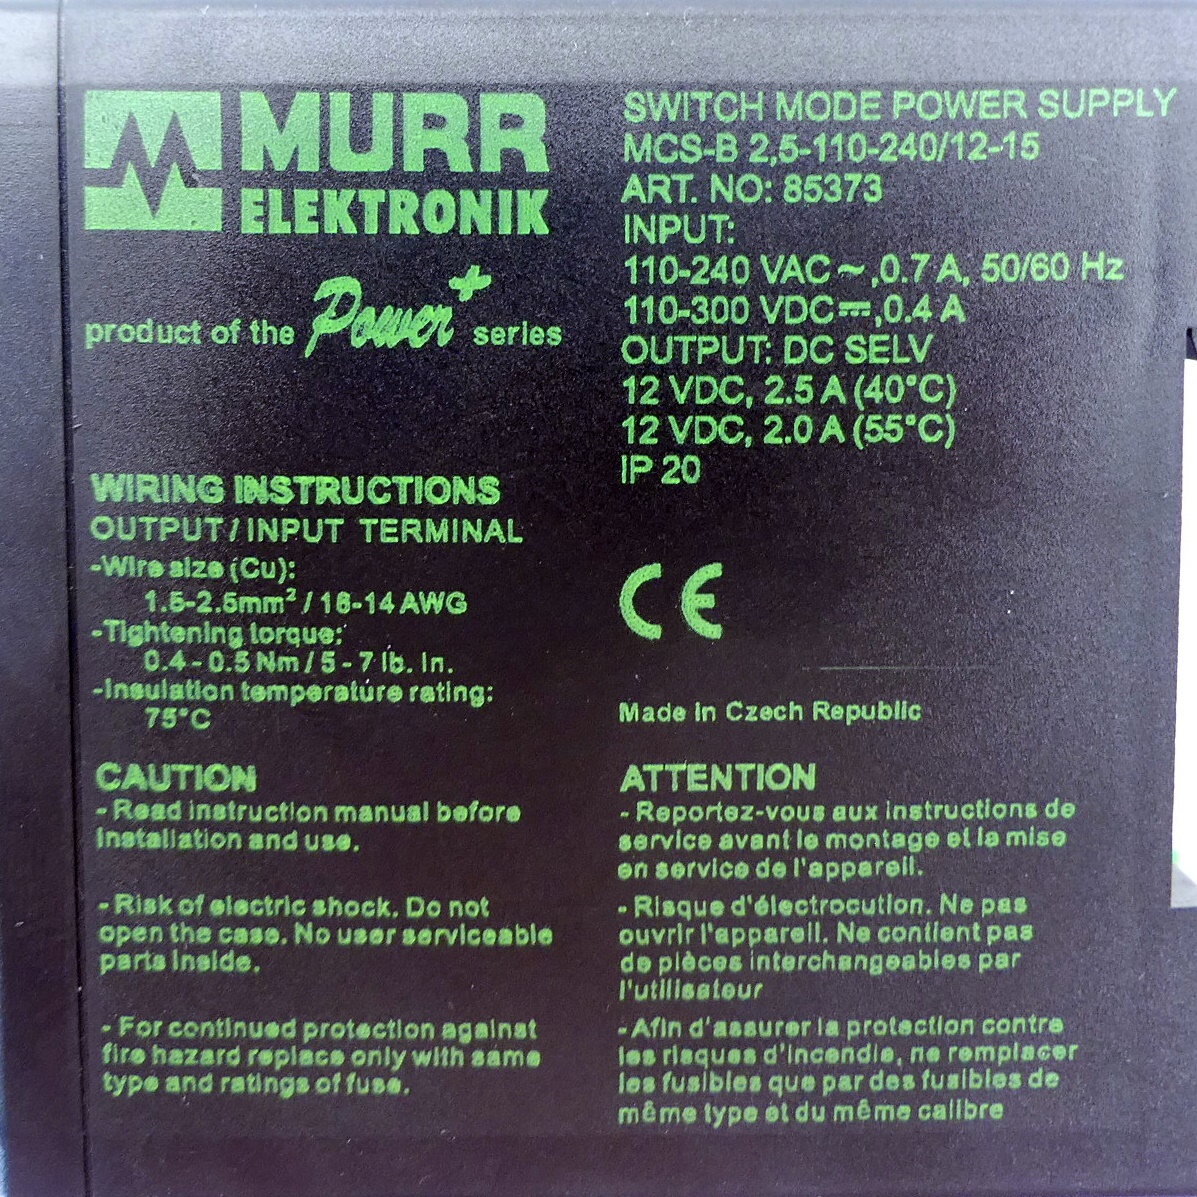 Switching power supply MSC-B 2,5-110-240/12-15 